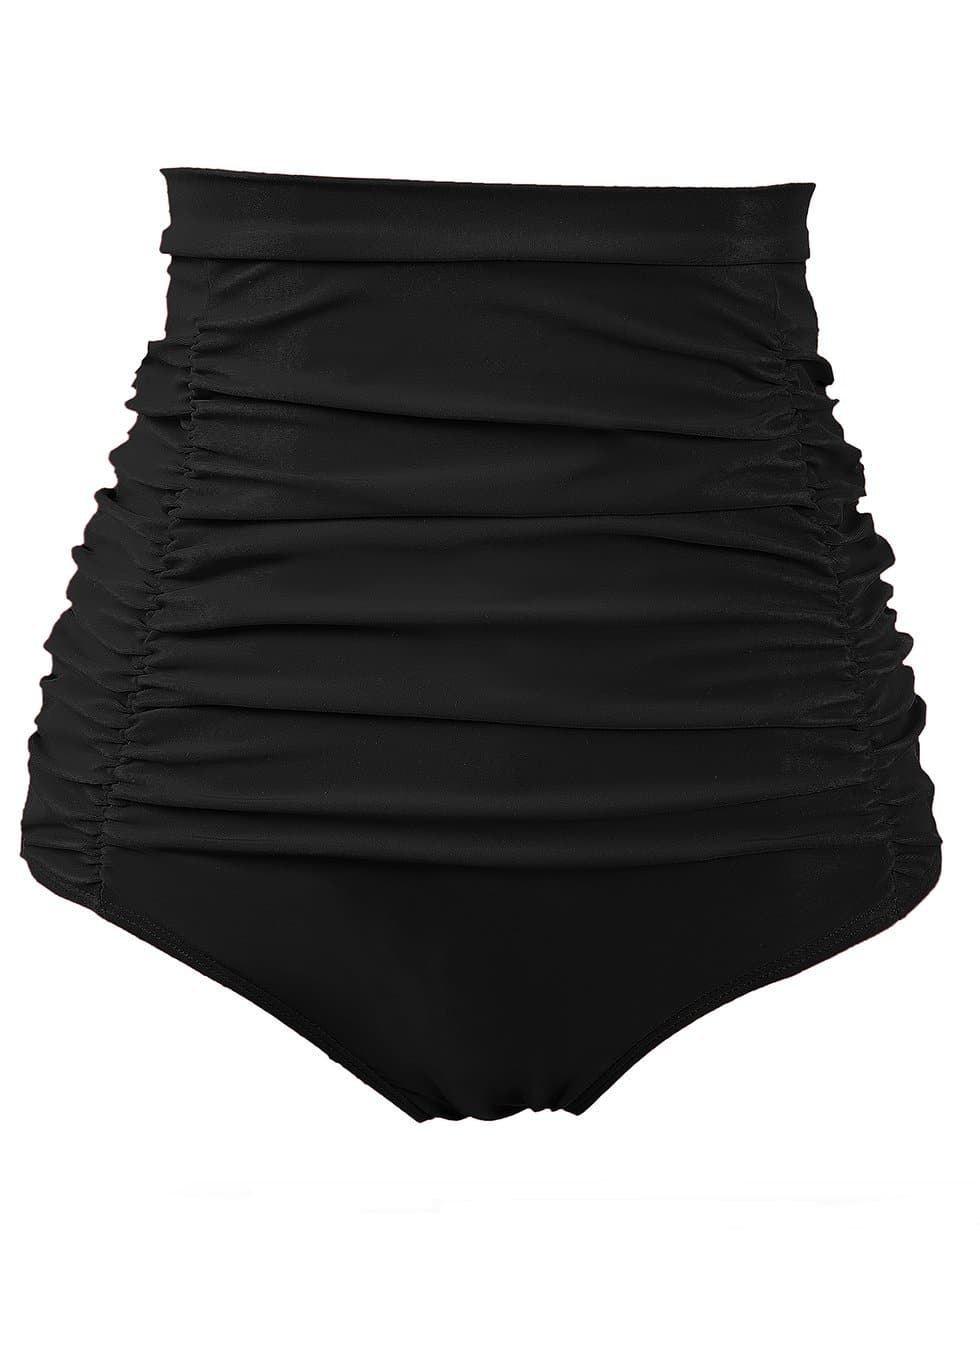 Product shot of Cocowear high waisted bikini bottoms